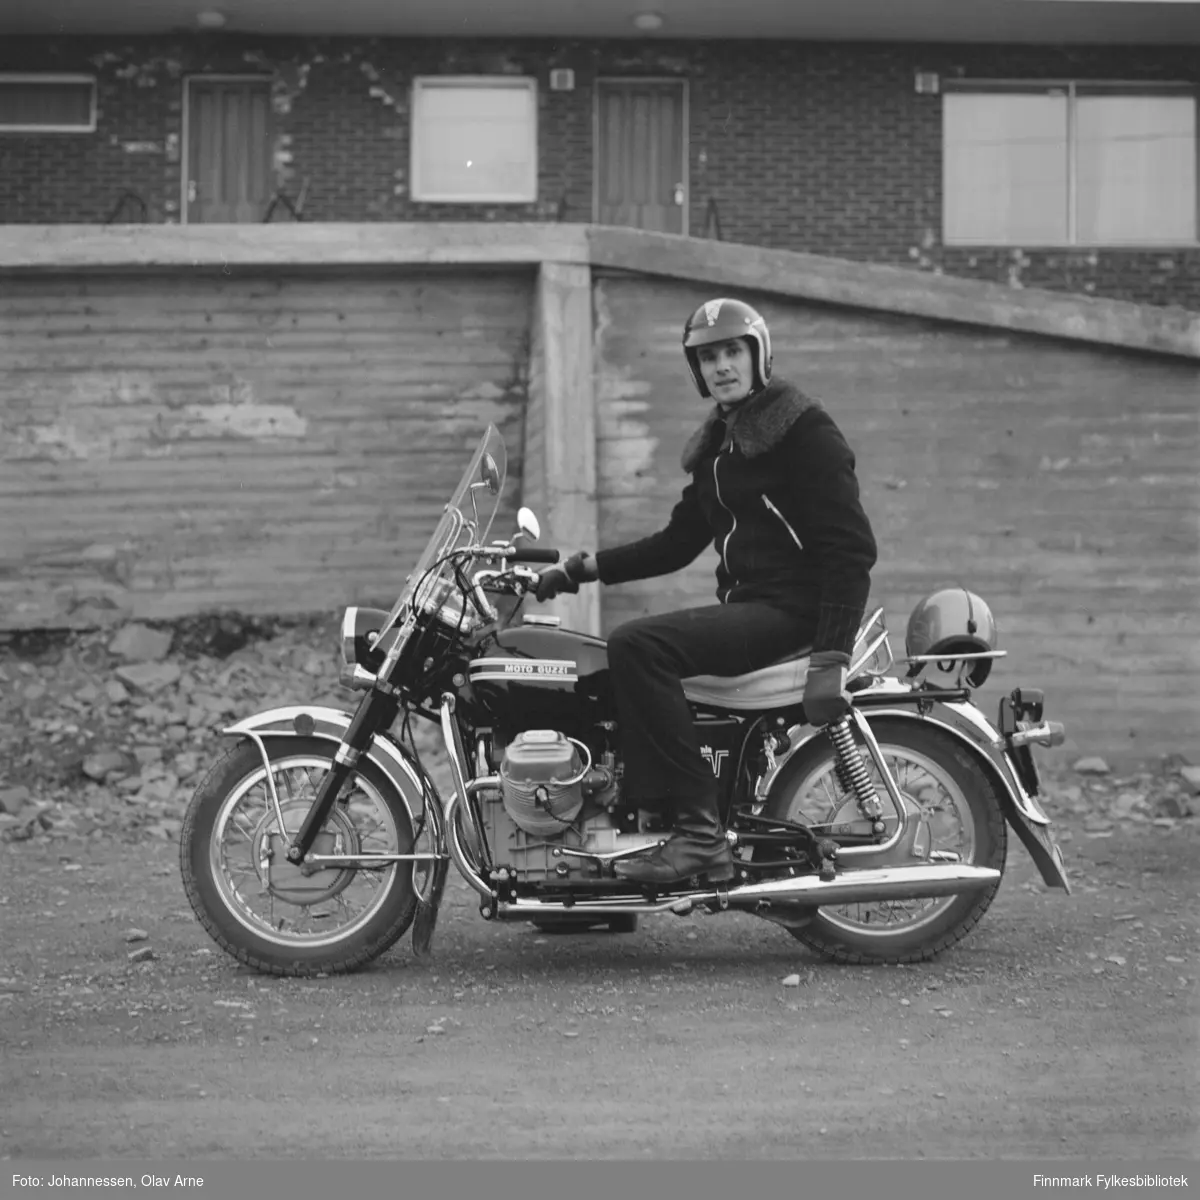 Dag Antonsen sitter på motorsykkel, modell Moto Guzzzi

I balgrunnen kan man se Åttemannsboligen øverst i Klausjorda

Påskrift: Bilde viser Dag Antonsen med sin  nye motorsykkel 